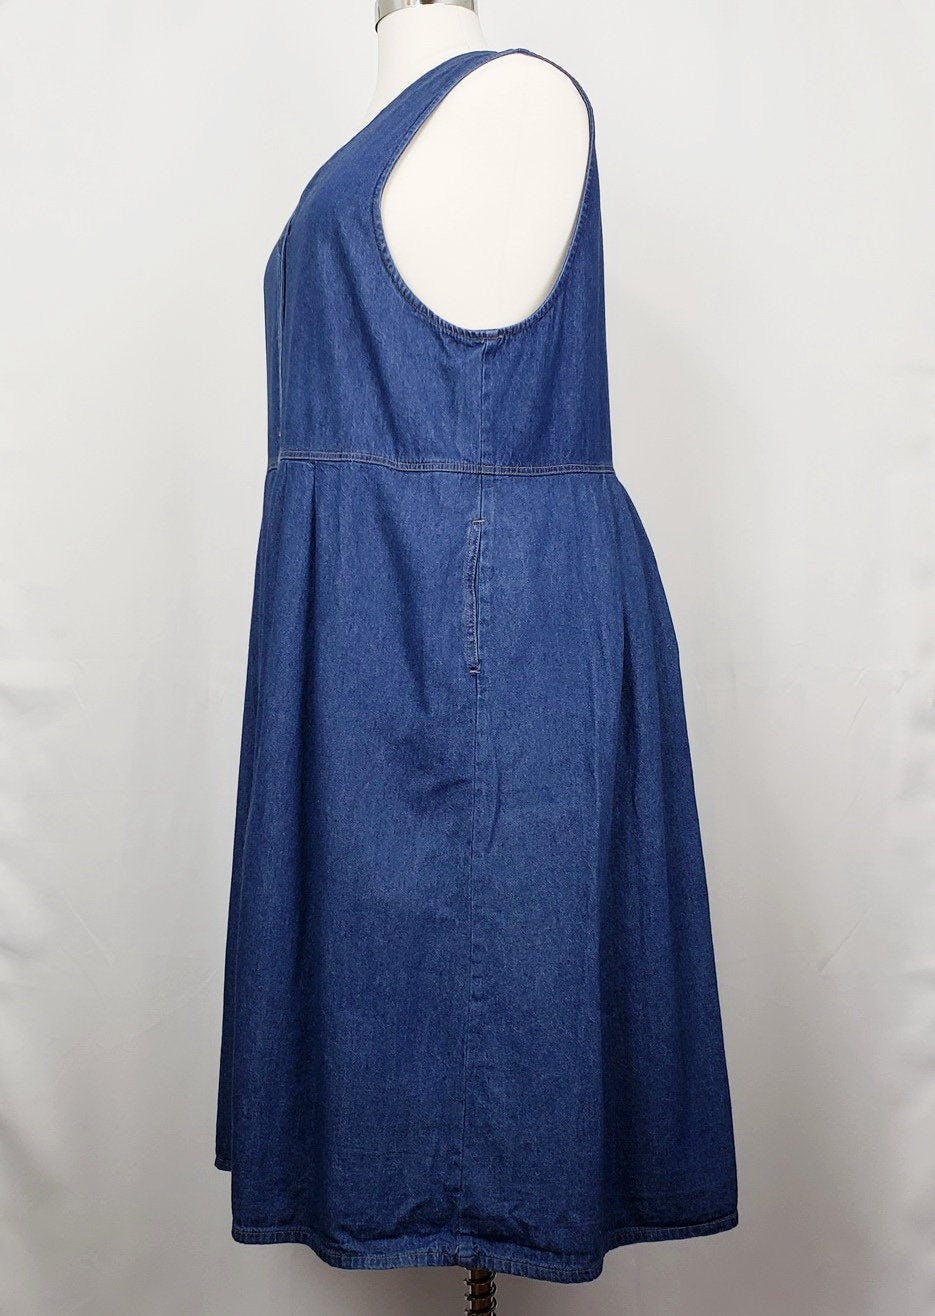 Vintage 90's Blue Denim Button Front Dress by Koret City Blues | Shop ...